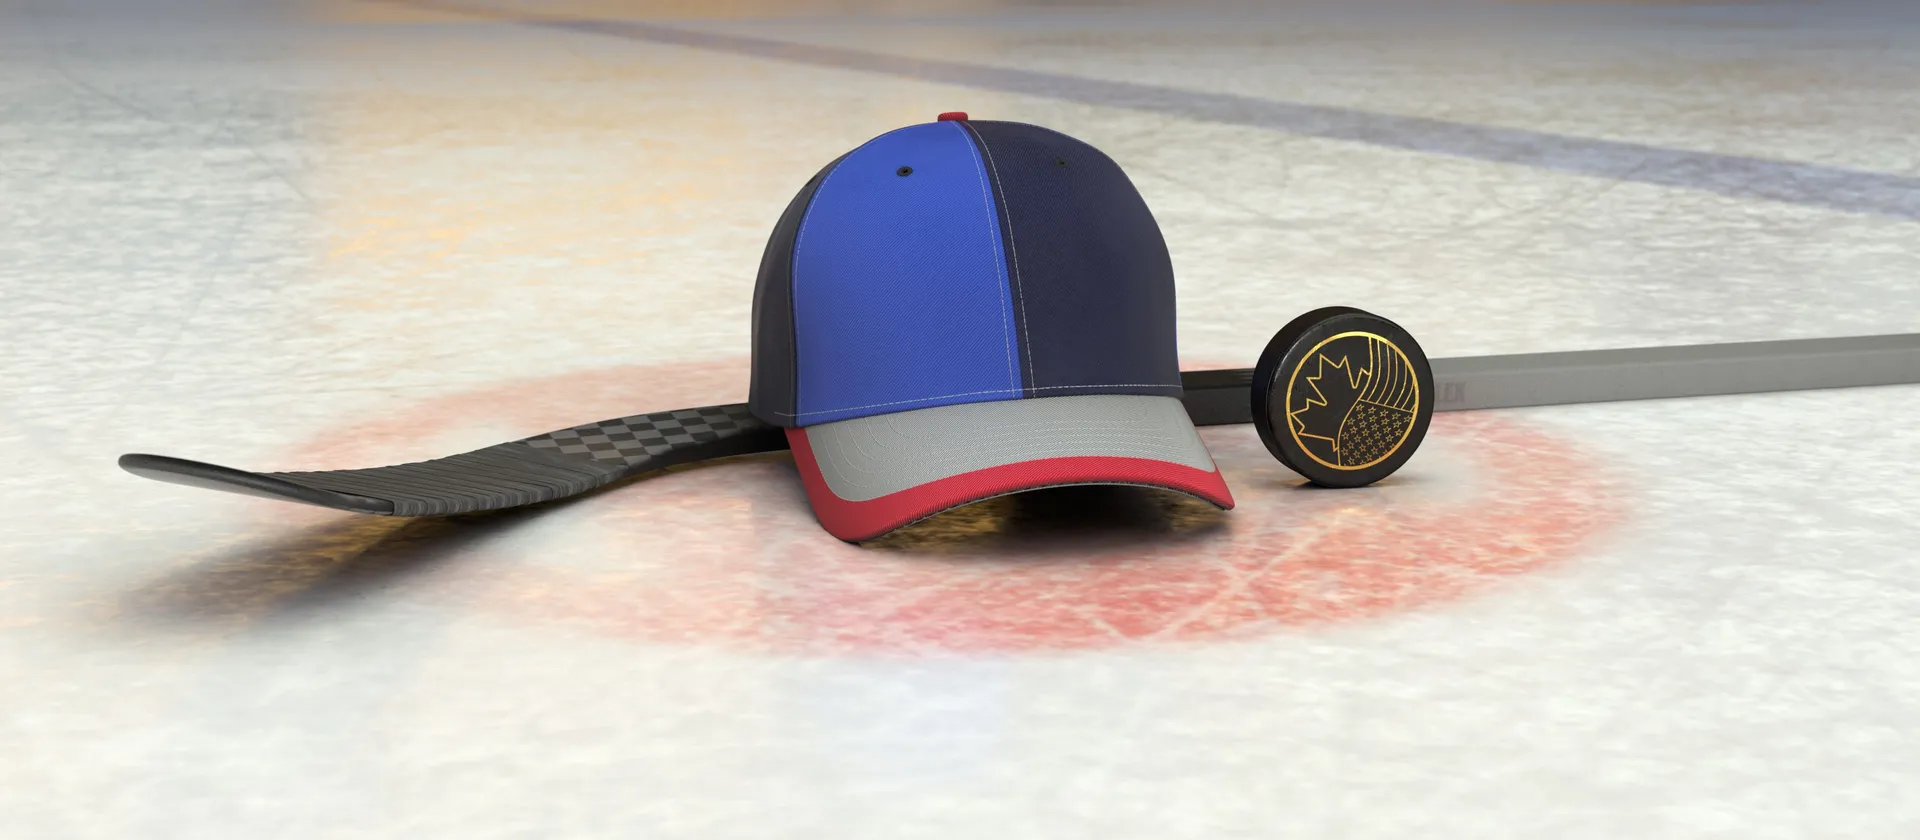 Bild på hockeyklubba, puck och en supporterkeps med NHL-laget Winnipeg Jets färger